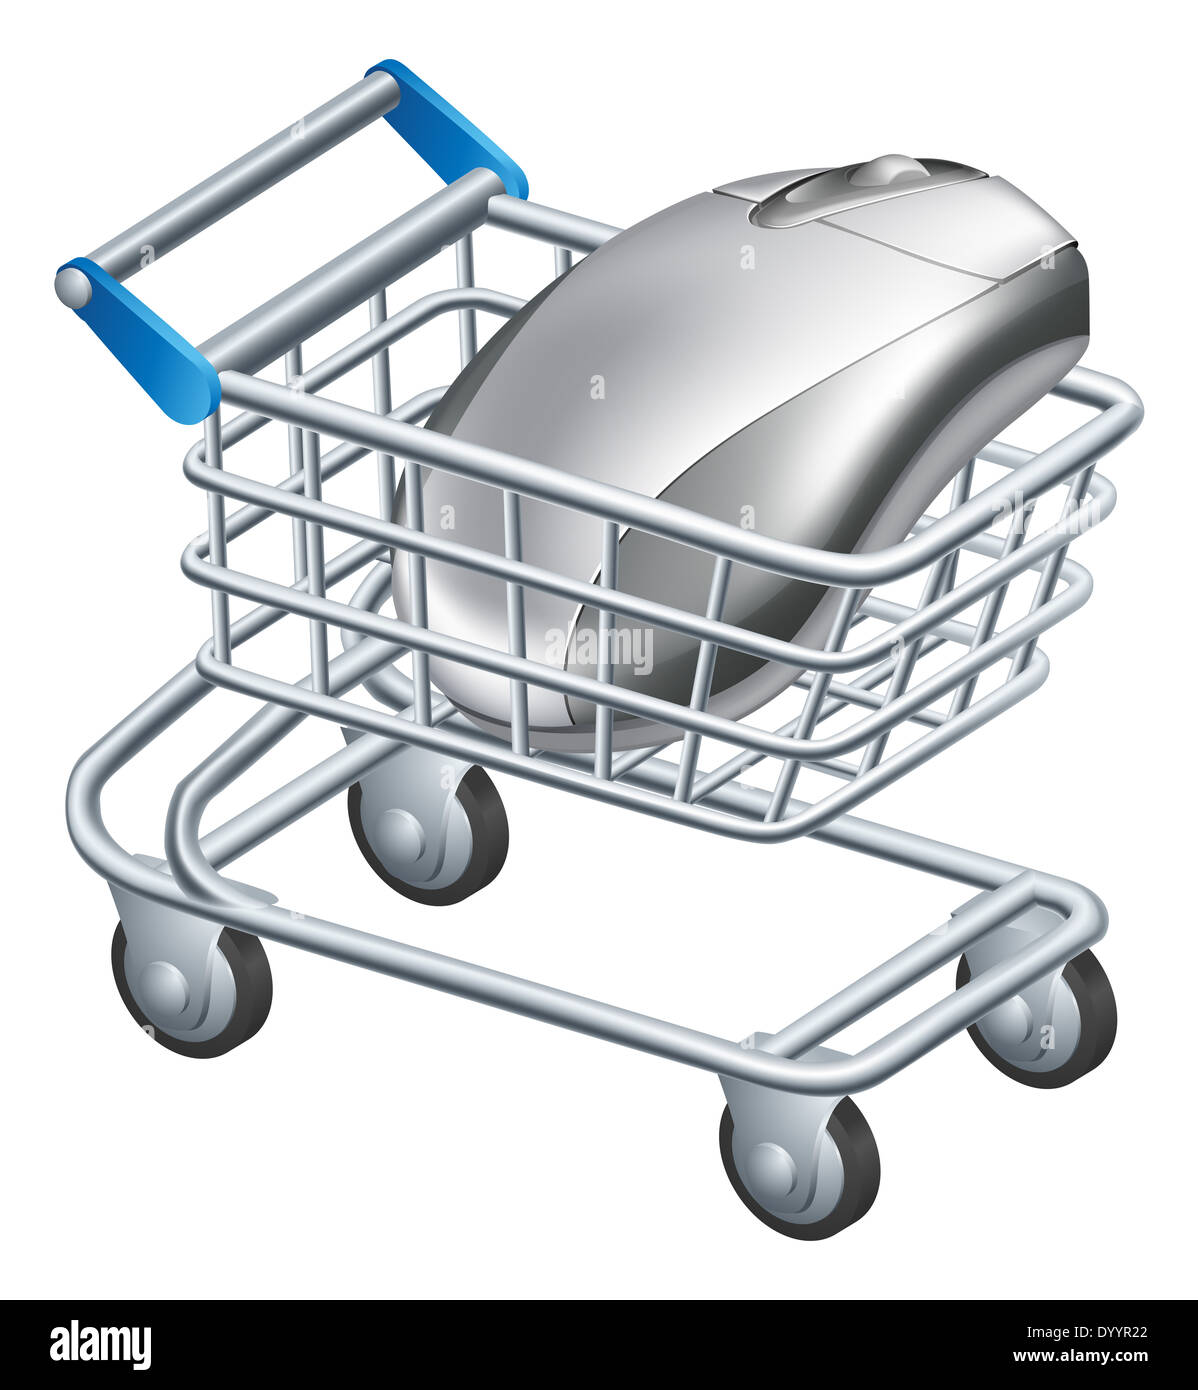 Internet en ligne shopping concept d'une souris d'ordinateur dans un panier ou le chariot Banque D'Images